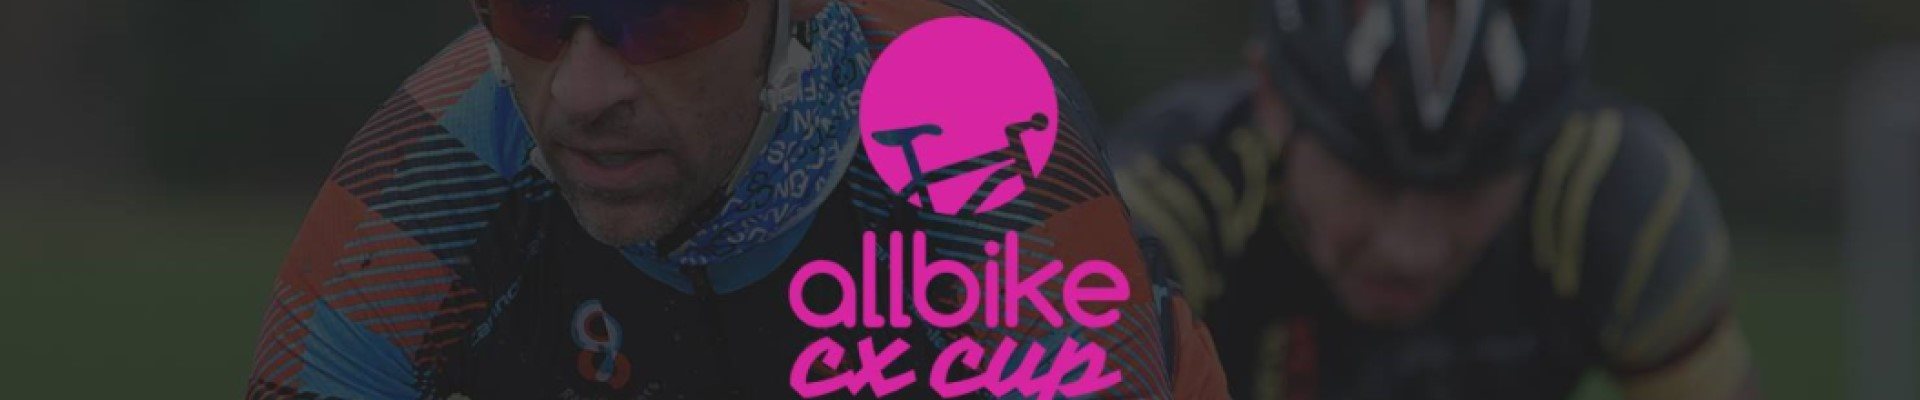 Allbike CX cup #2 Silkeborg